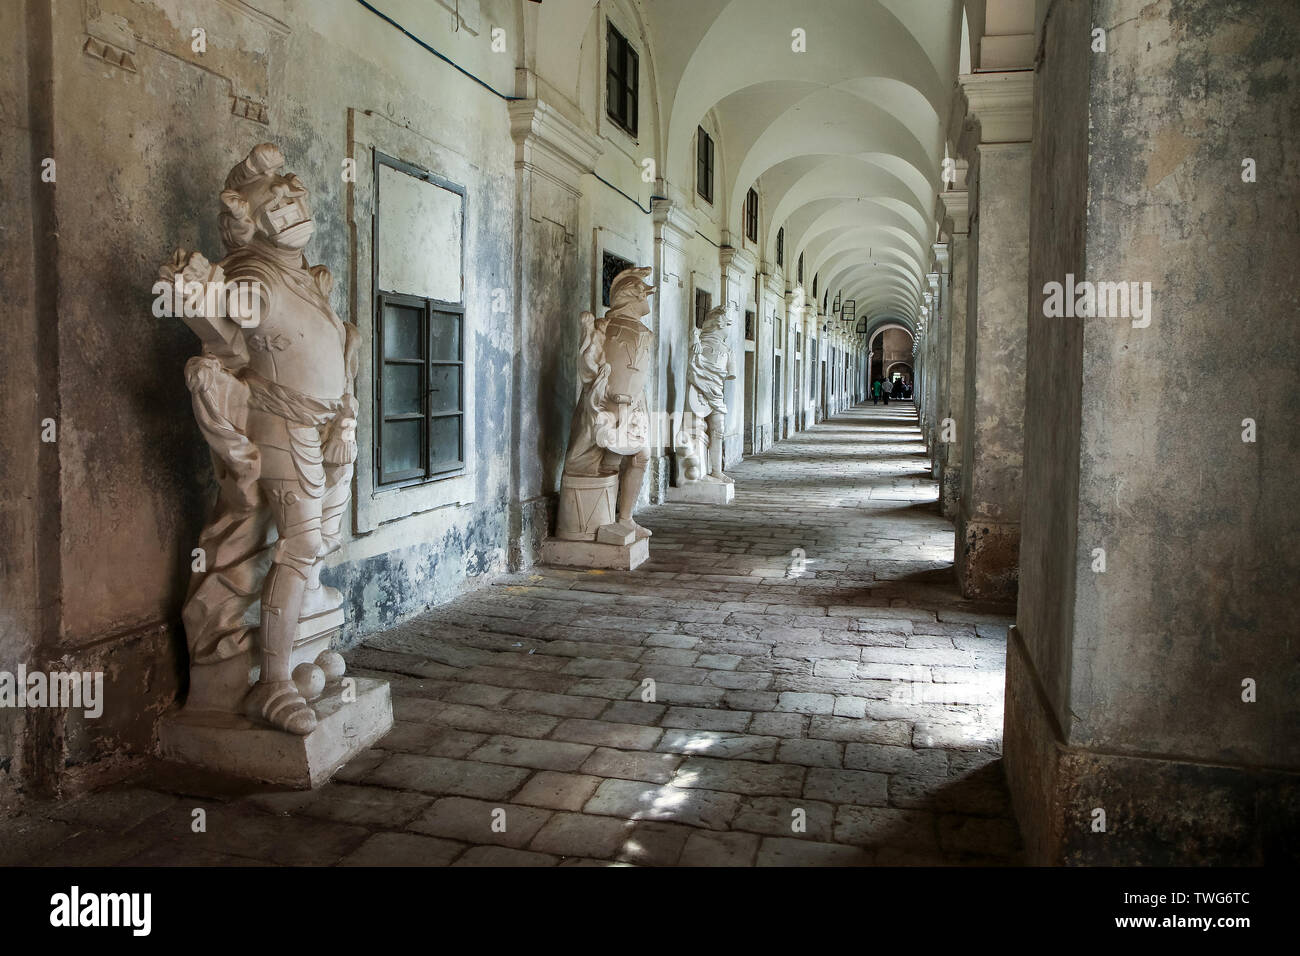 Le solitaire et vide couloirs de l'ancien bâtiment historique avec ses statues. Architecture intéressante du passé. Banque D'Images